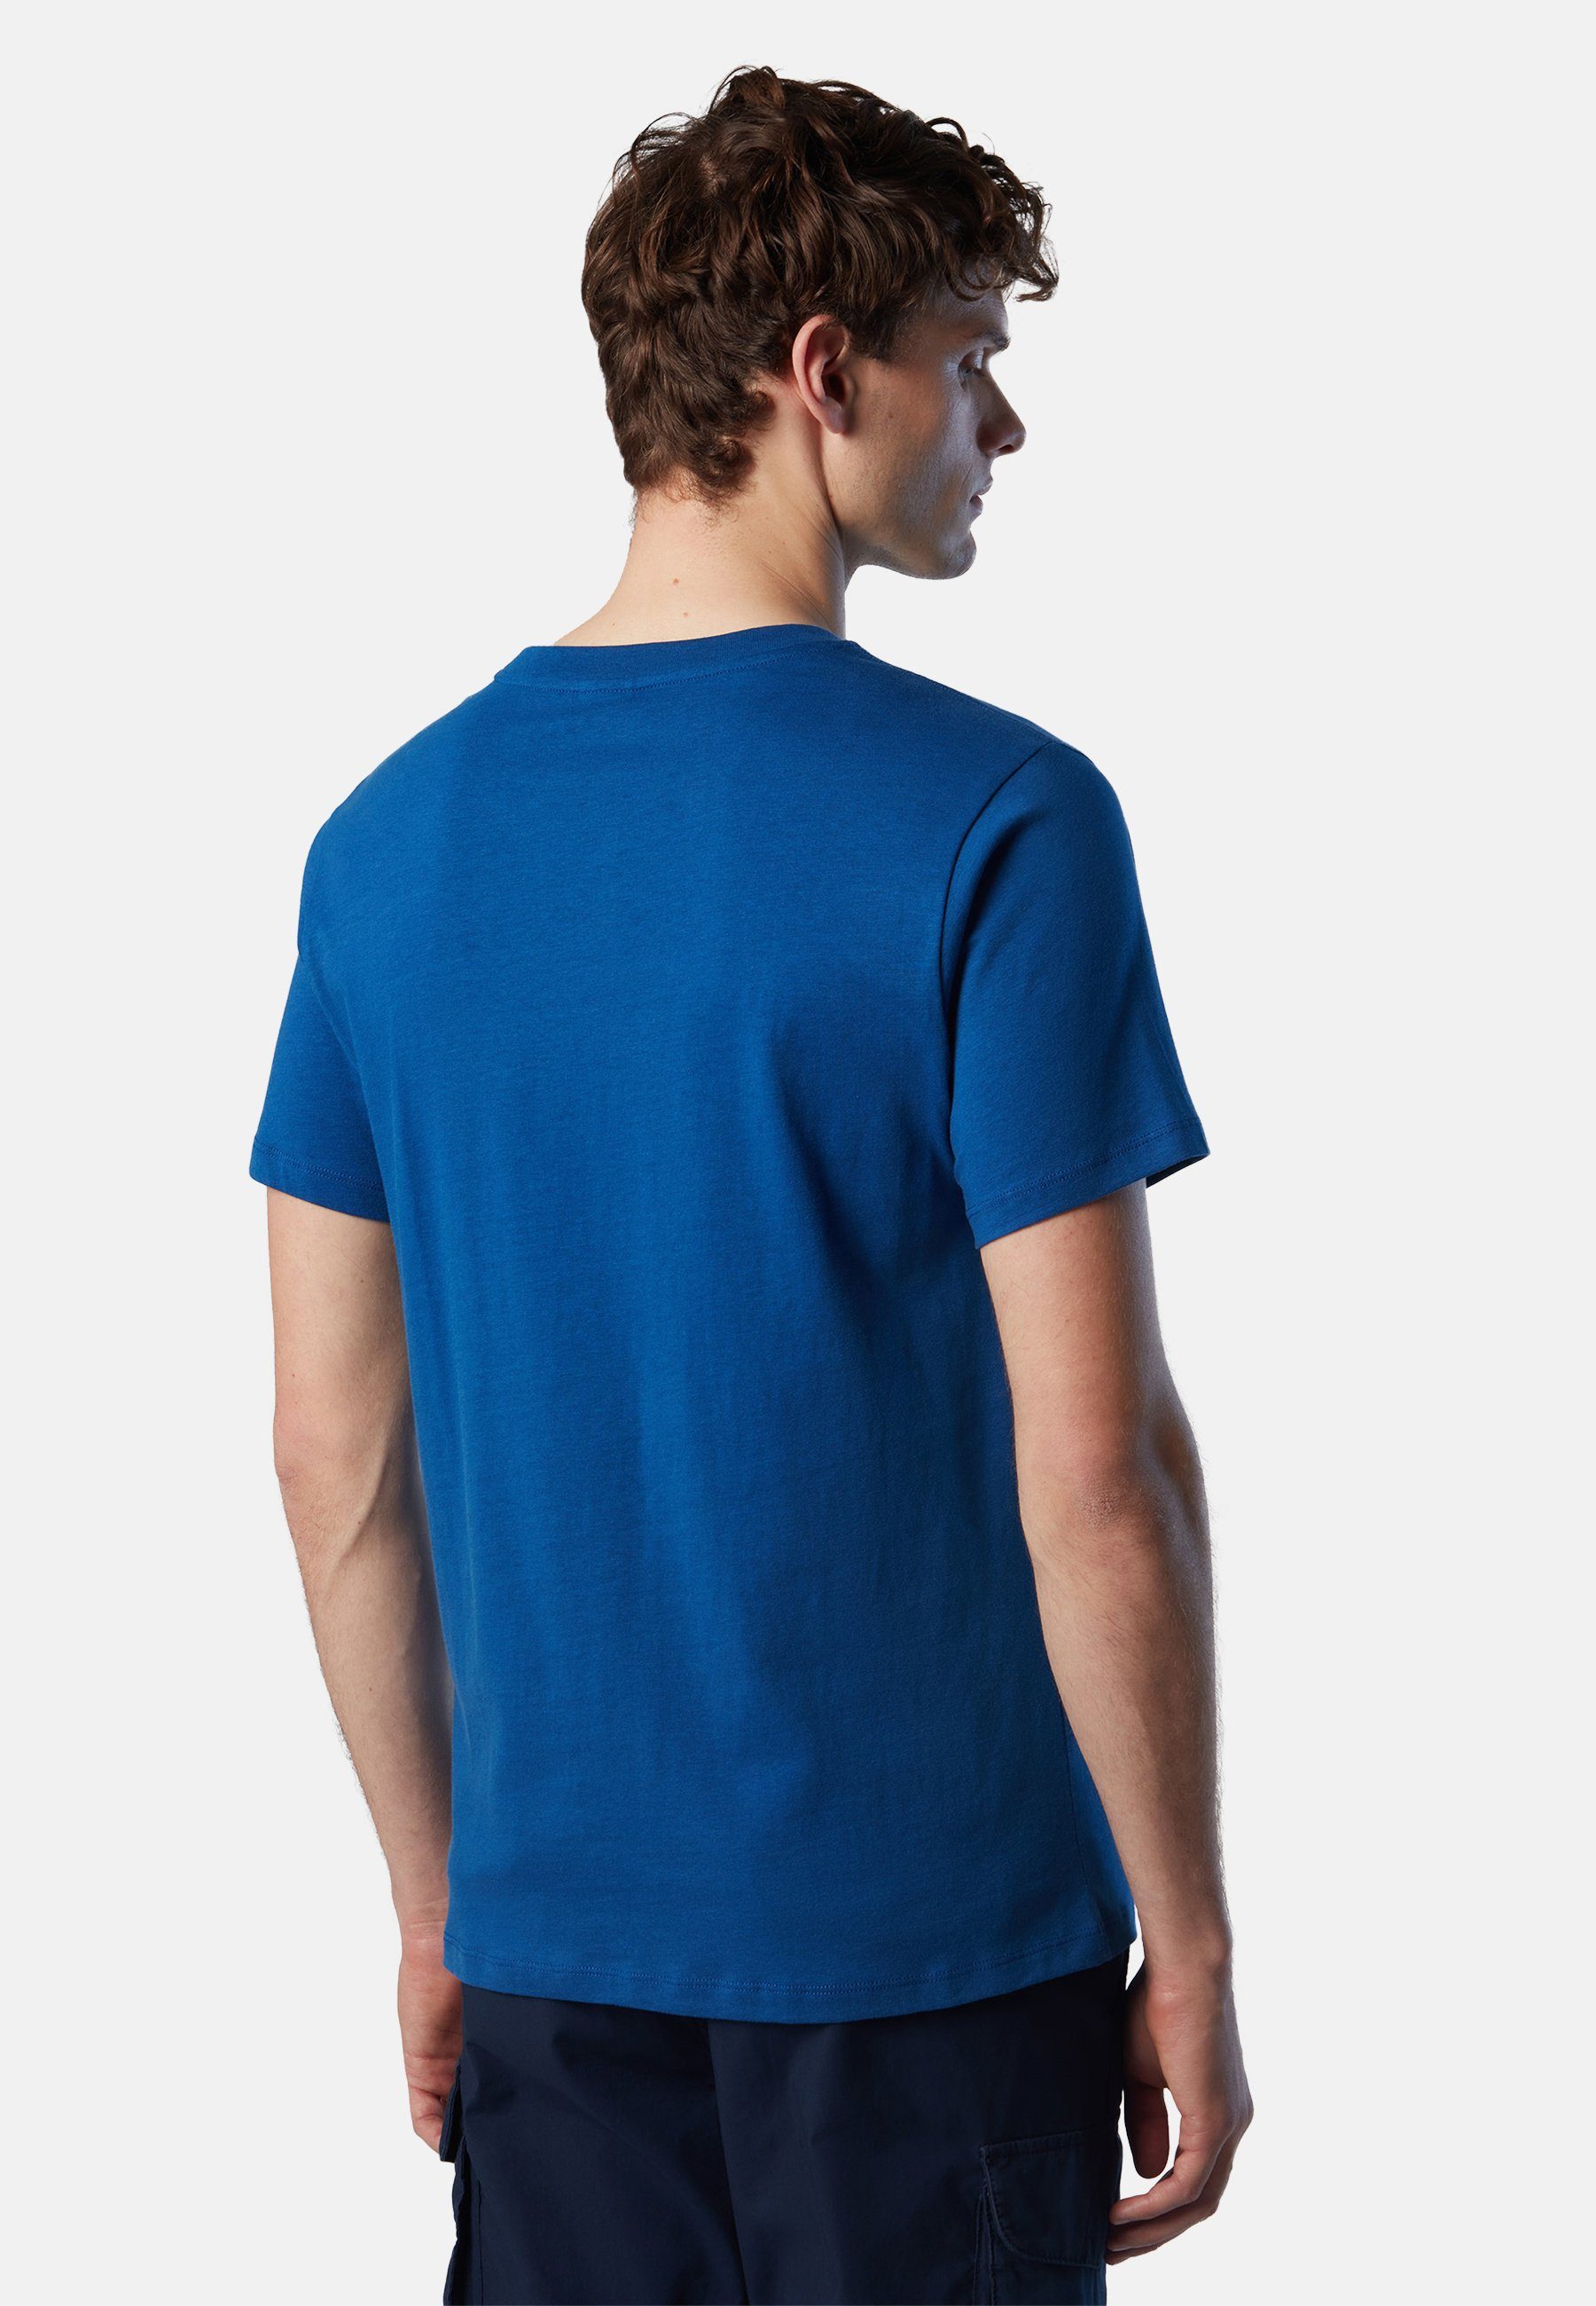 Maxi-Logo-Aufdruck BRIGHT mit T-Shirt klassischem North T-Shirt BLUE Design mit Sails